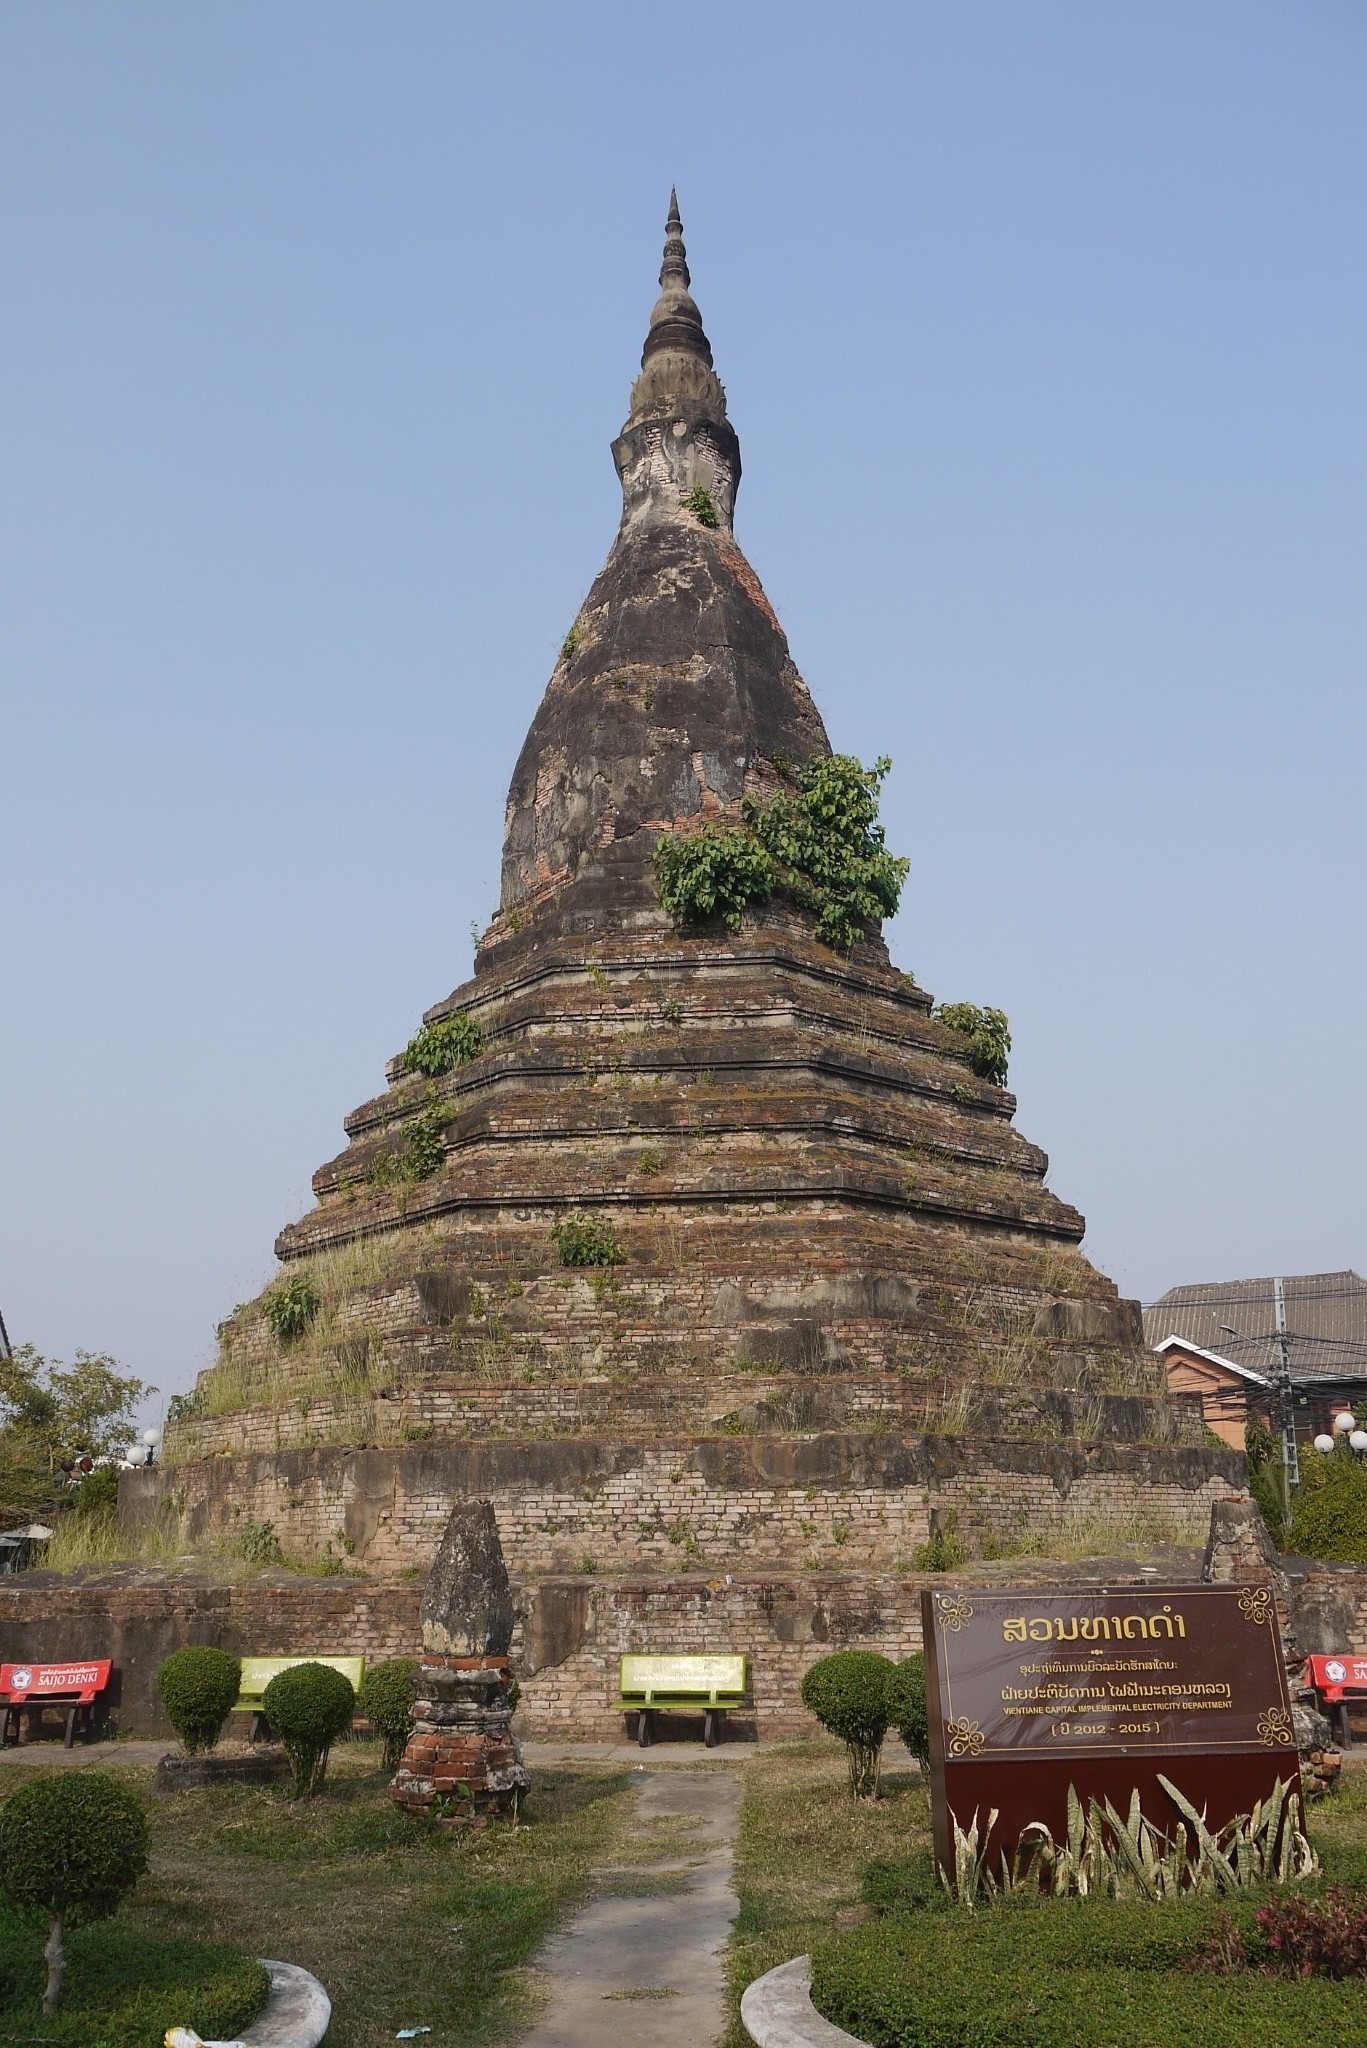 东南亚五国探访历史古迹:老挝自由行2;万象